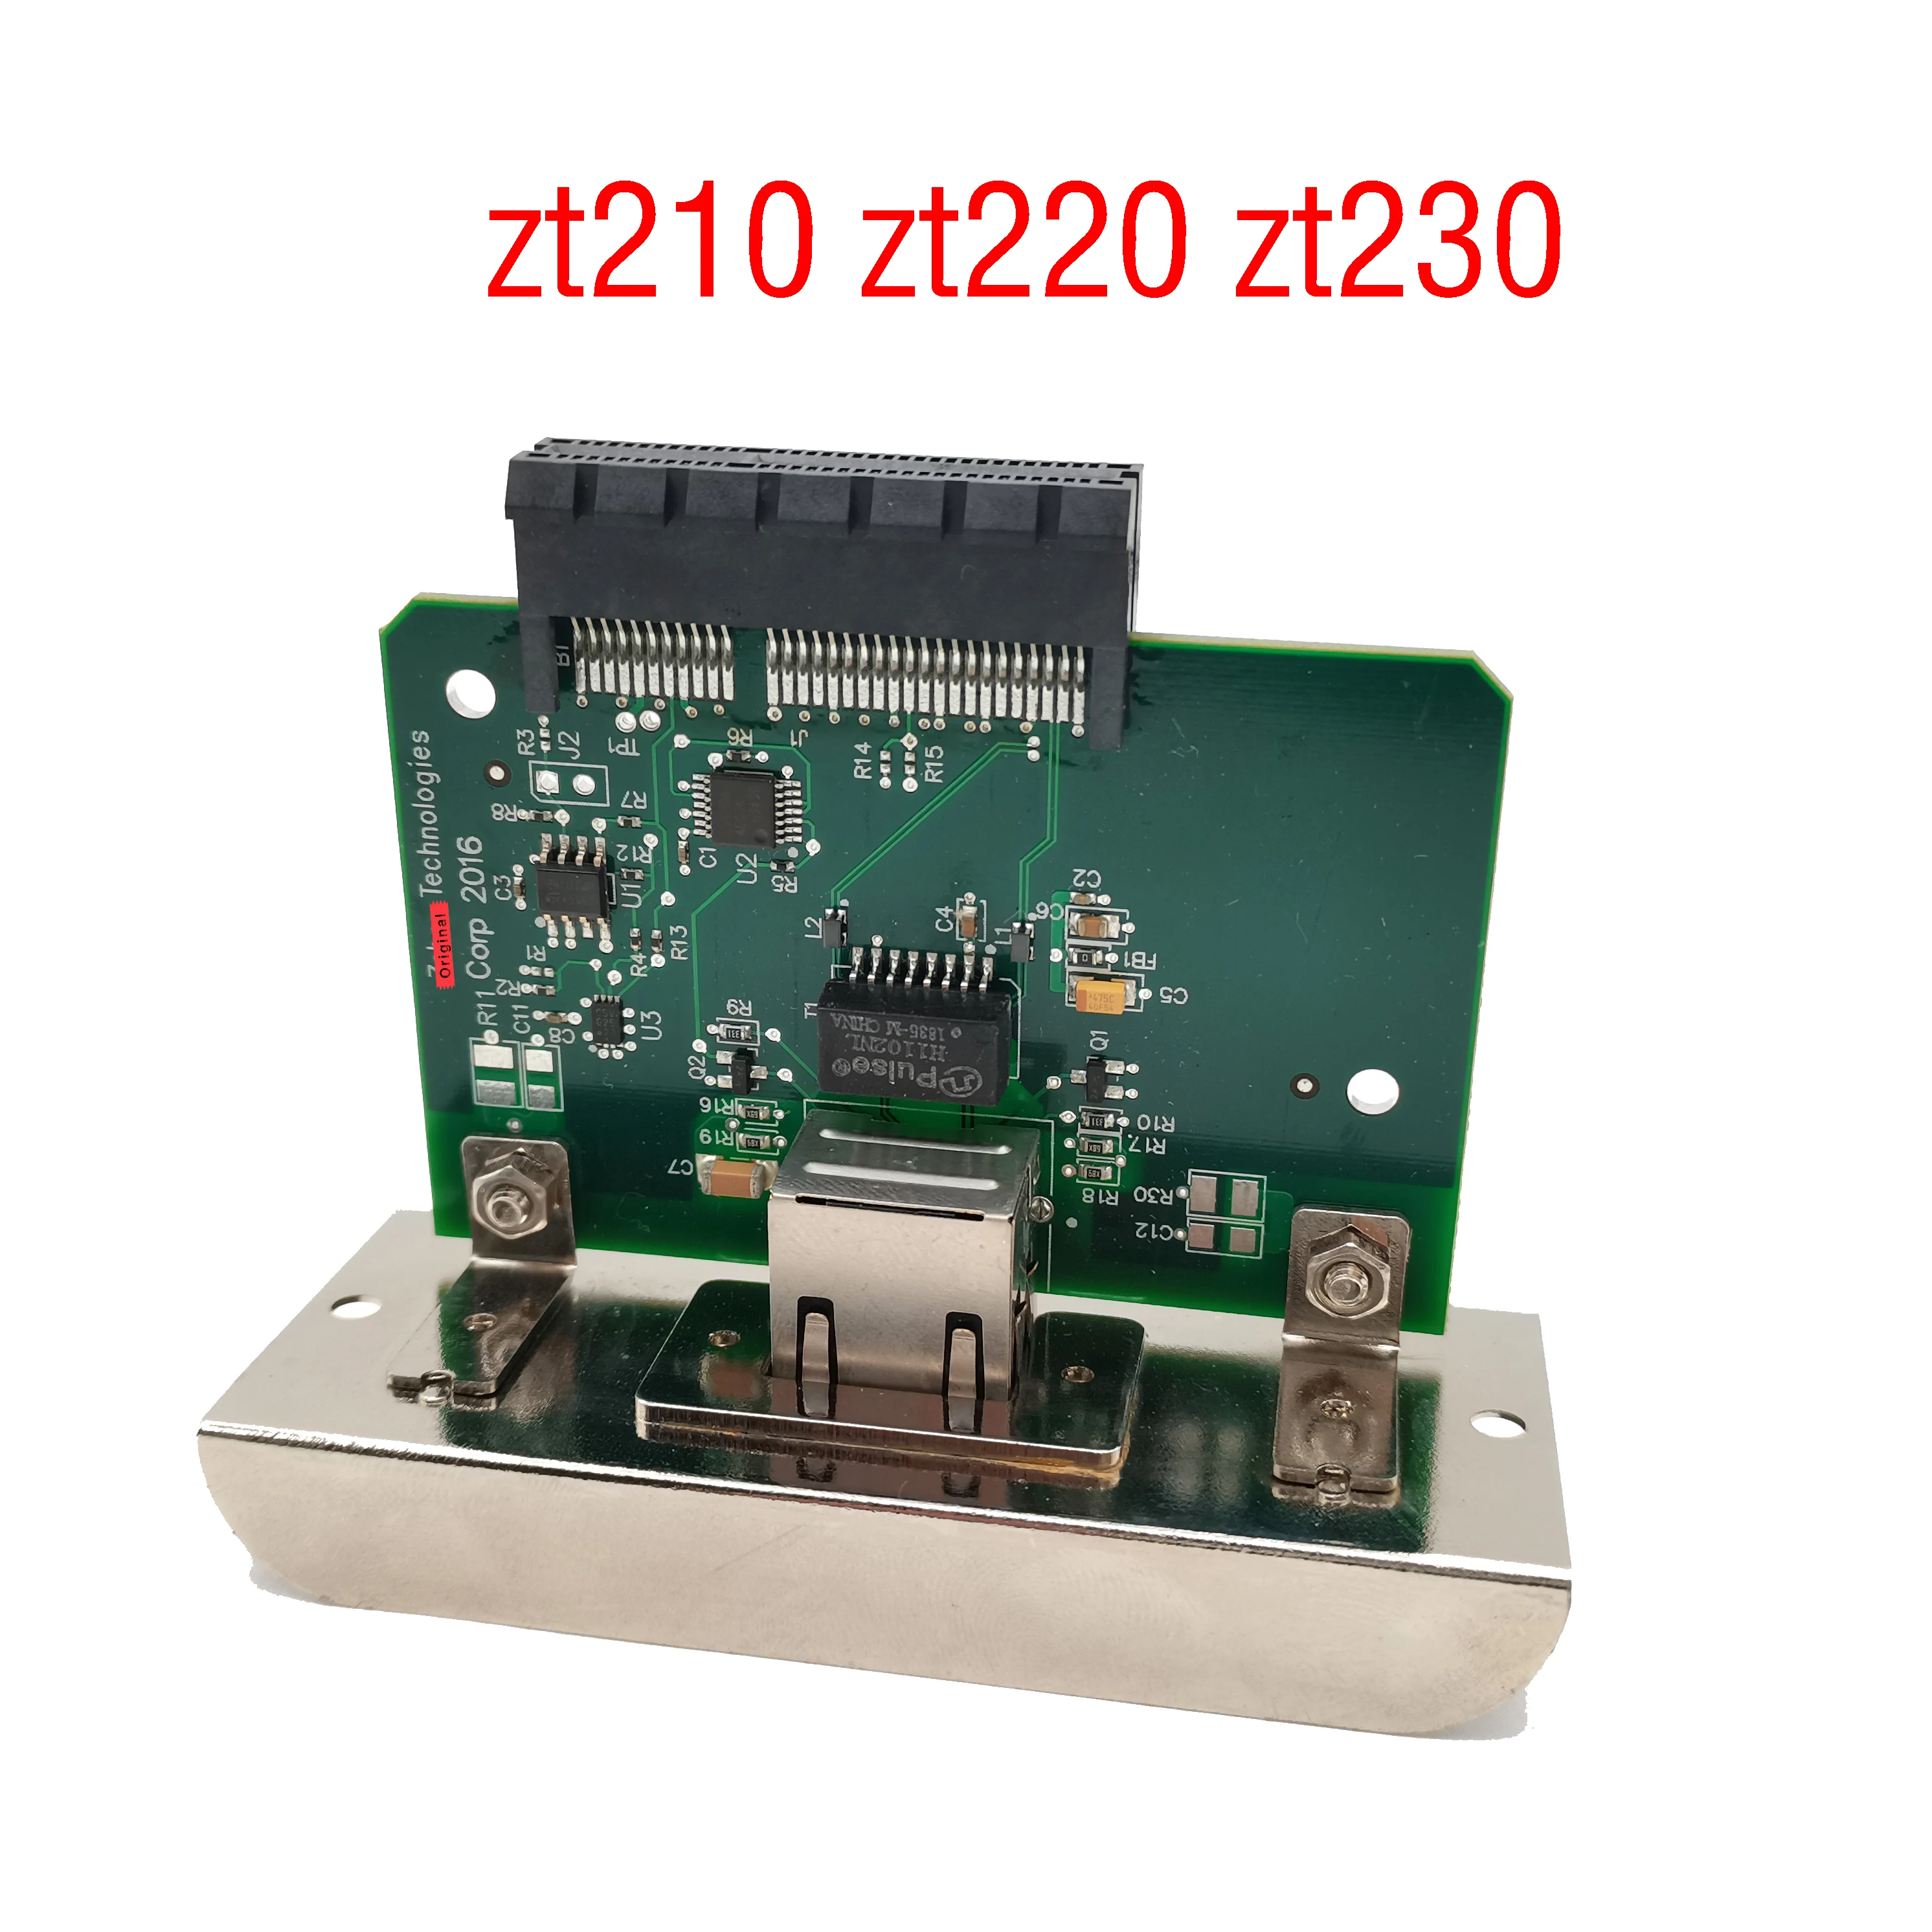 

New zt210 zt220 zt230 Wired Built-in Network Card PCBA Board For Zebra zt-210 zt-220 zt-230 Barcode Printer Card